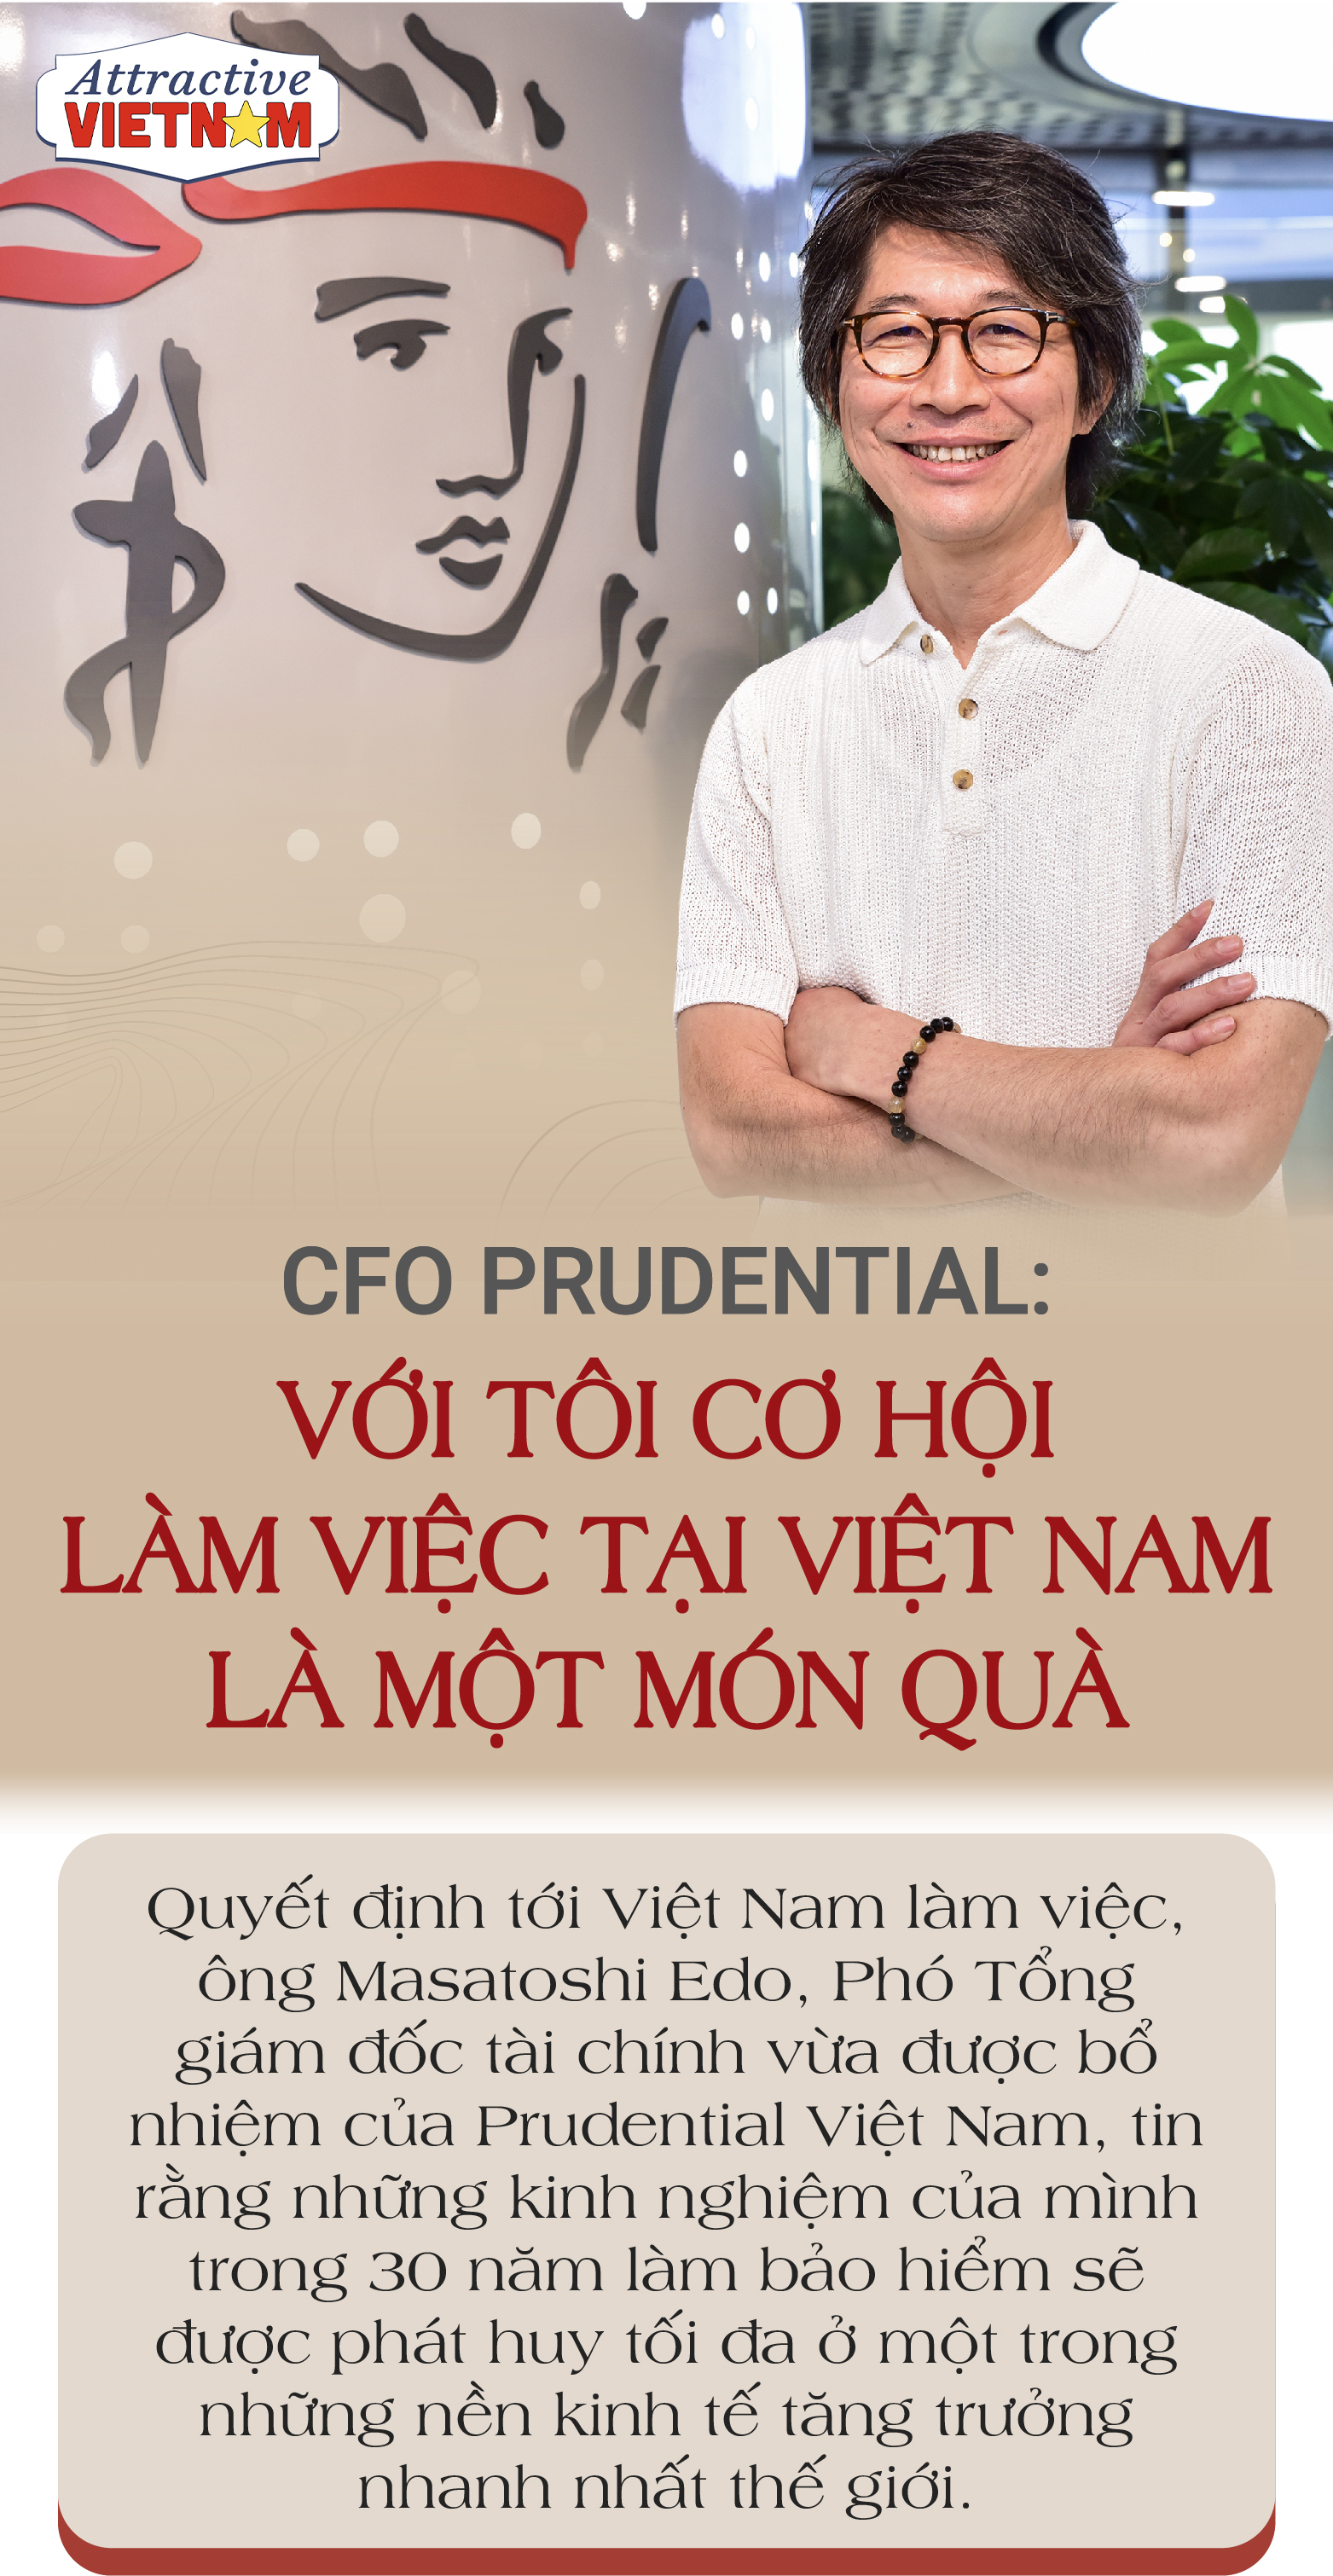 Video Ý nghĩa Bảo hiểm tại Công ty Bảo hiểm Prudential Việt Nam  Học viện  hậu cần ngành Bảo hiểm thuộc Bigfamily